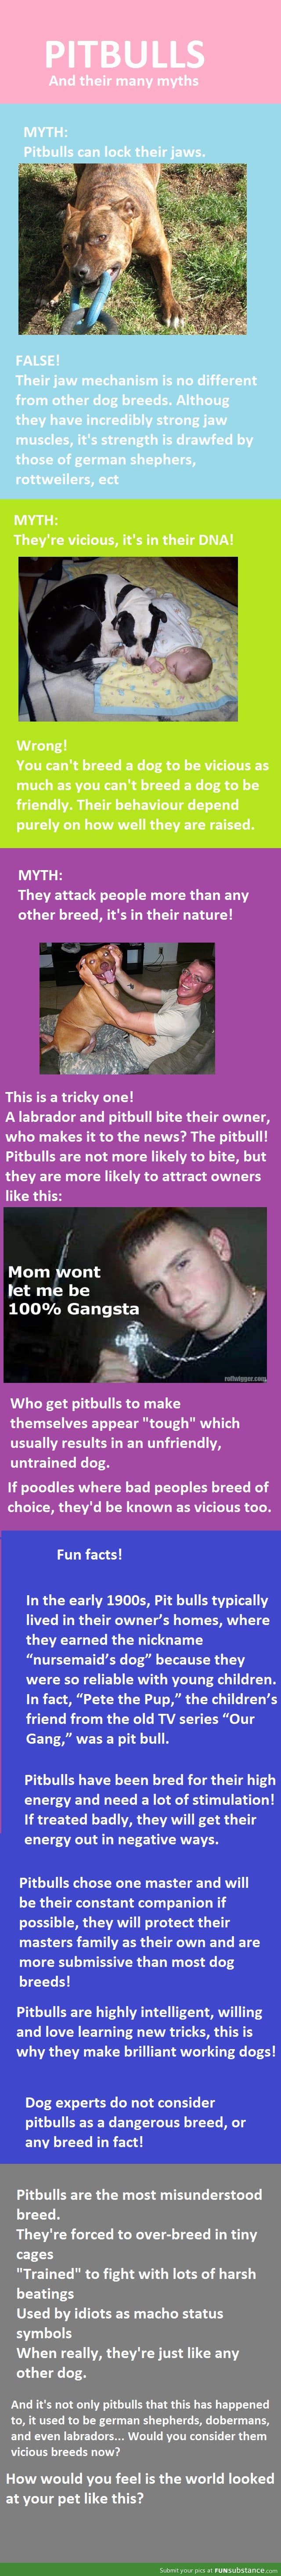 Myths About Pitbulls